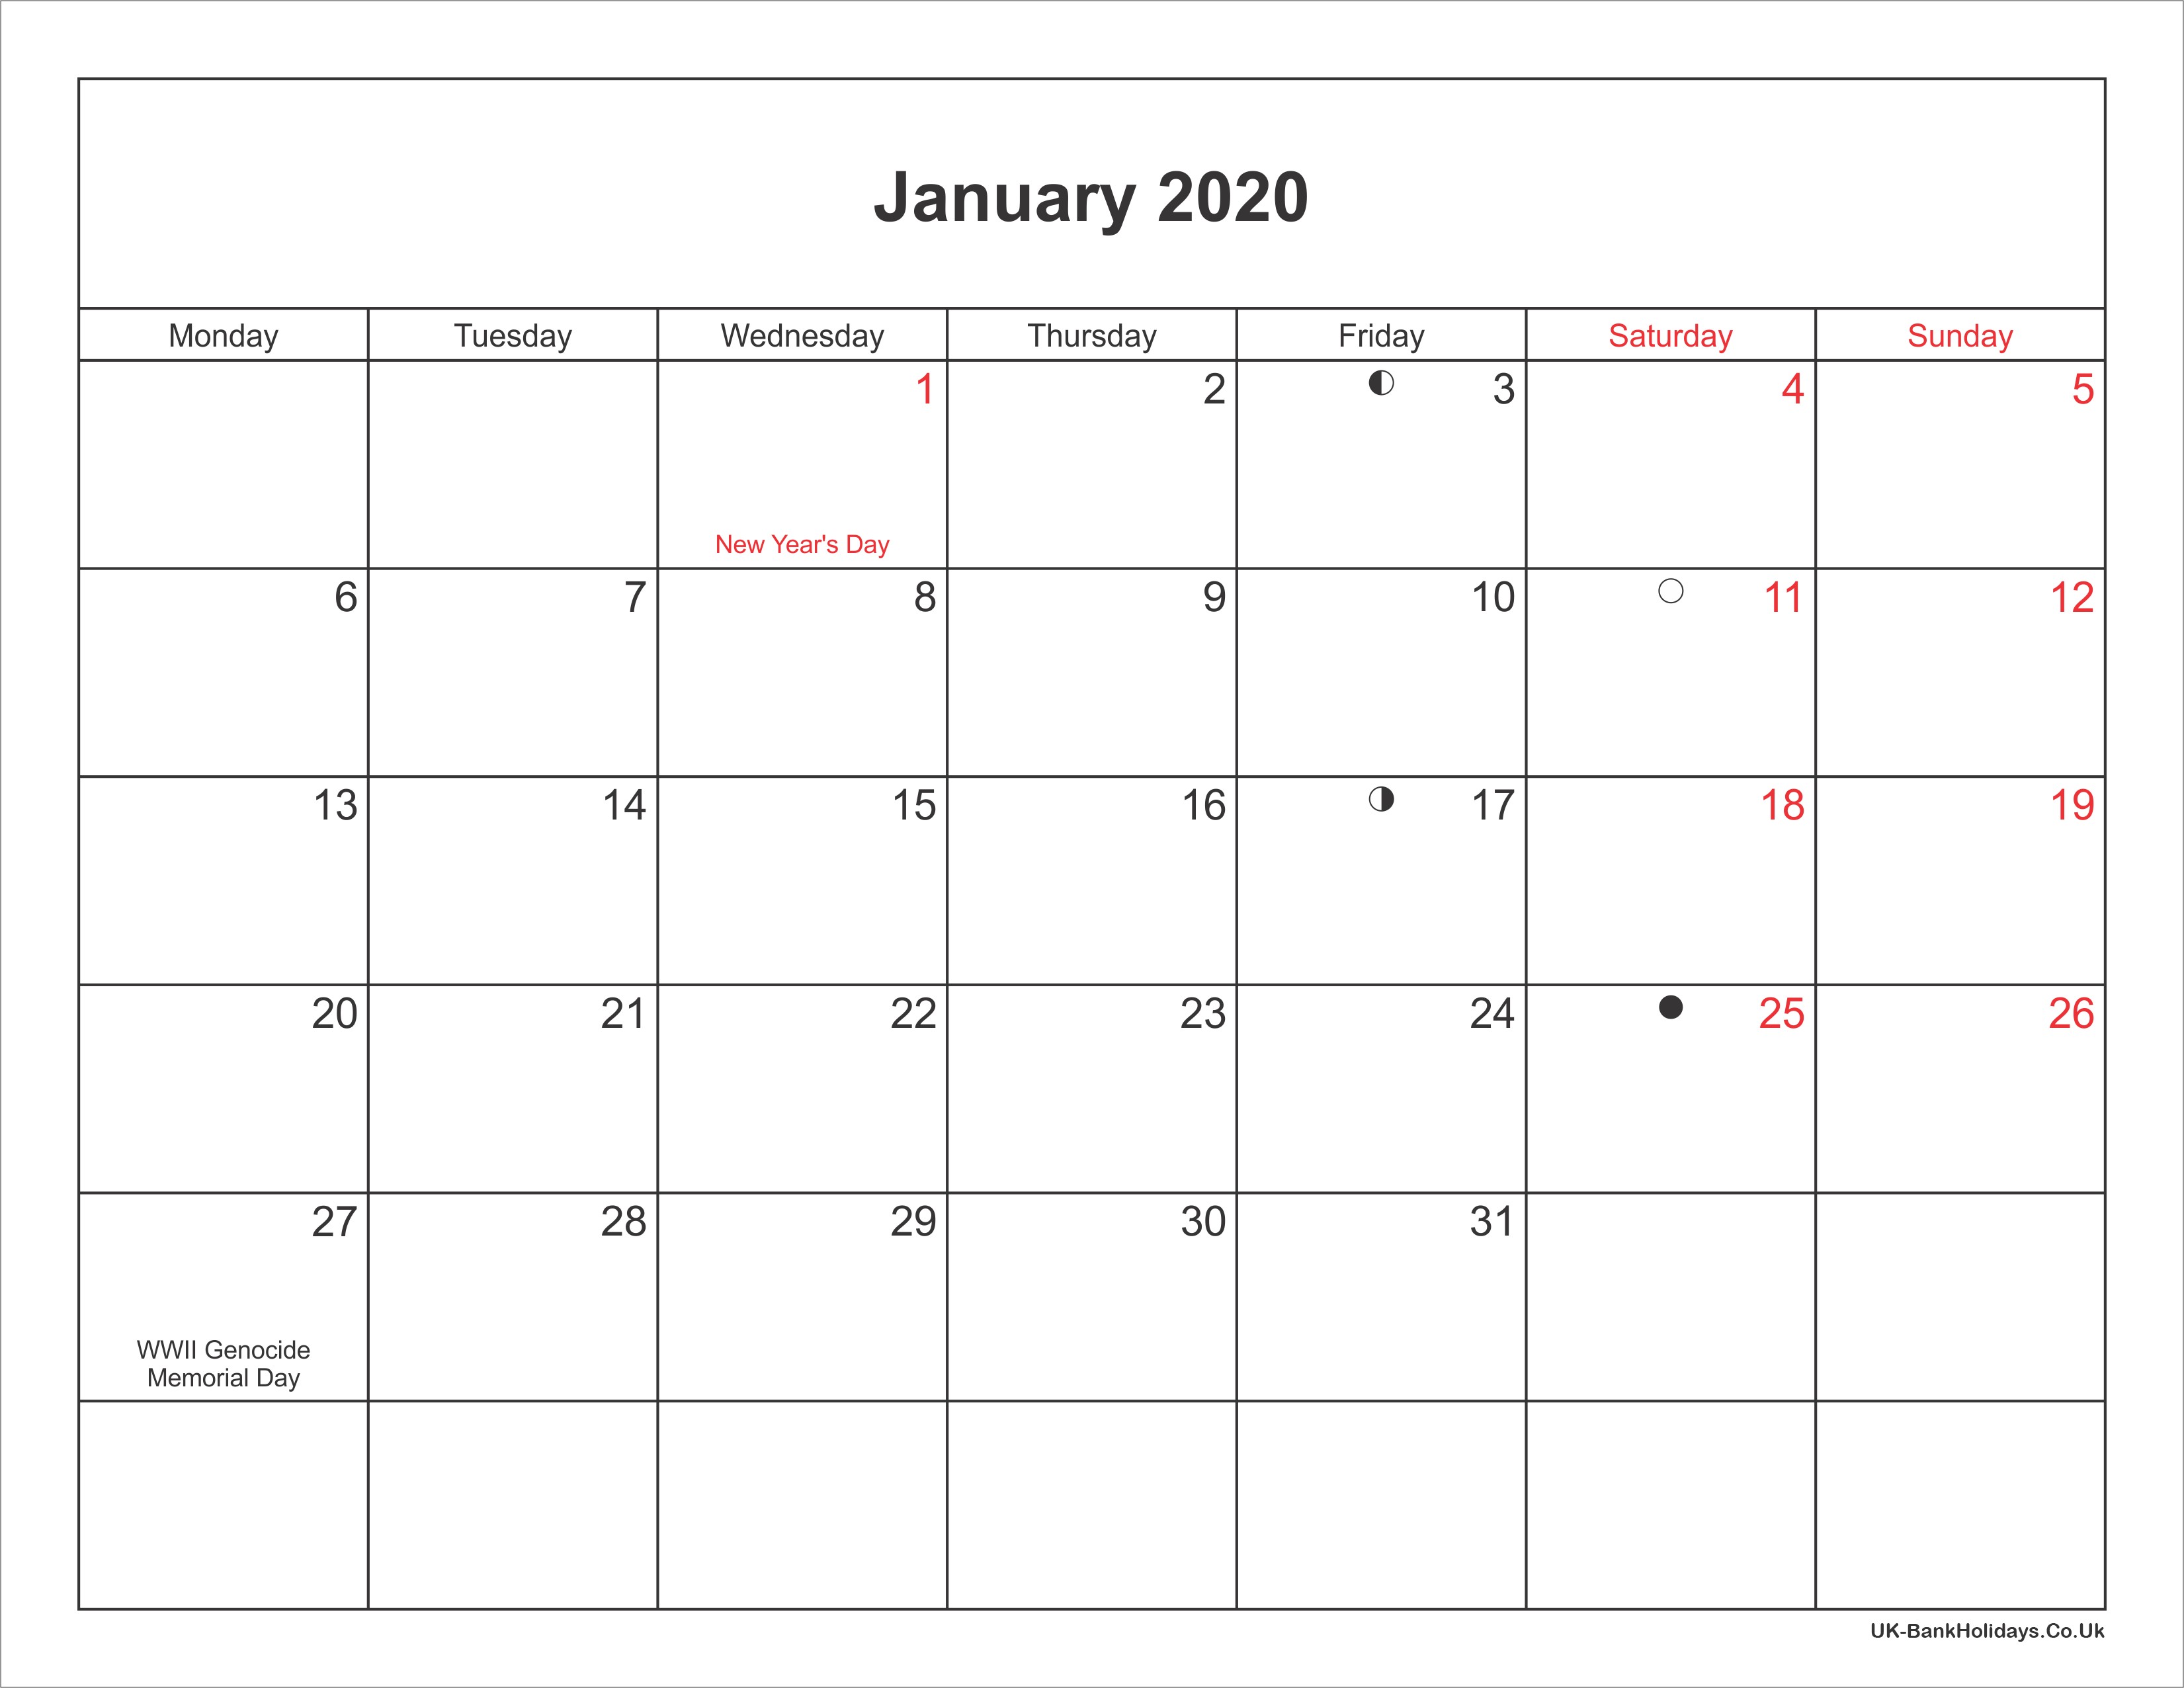 January 2020 Calendar Printable with Bank Holidays UK